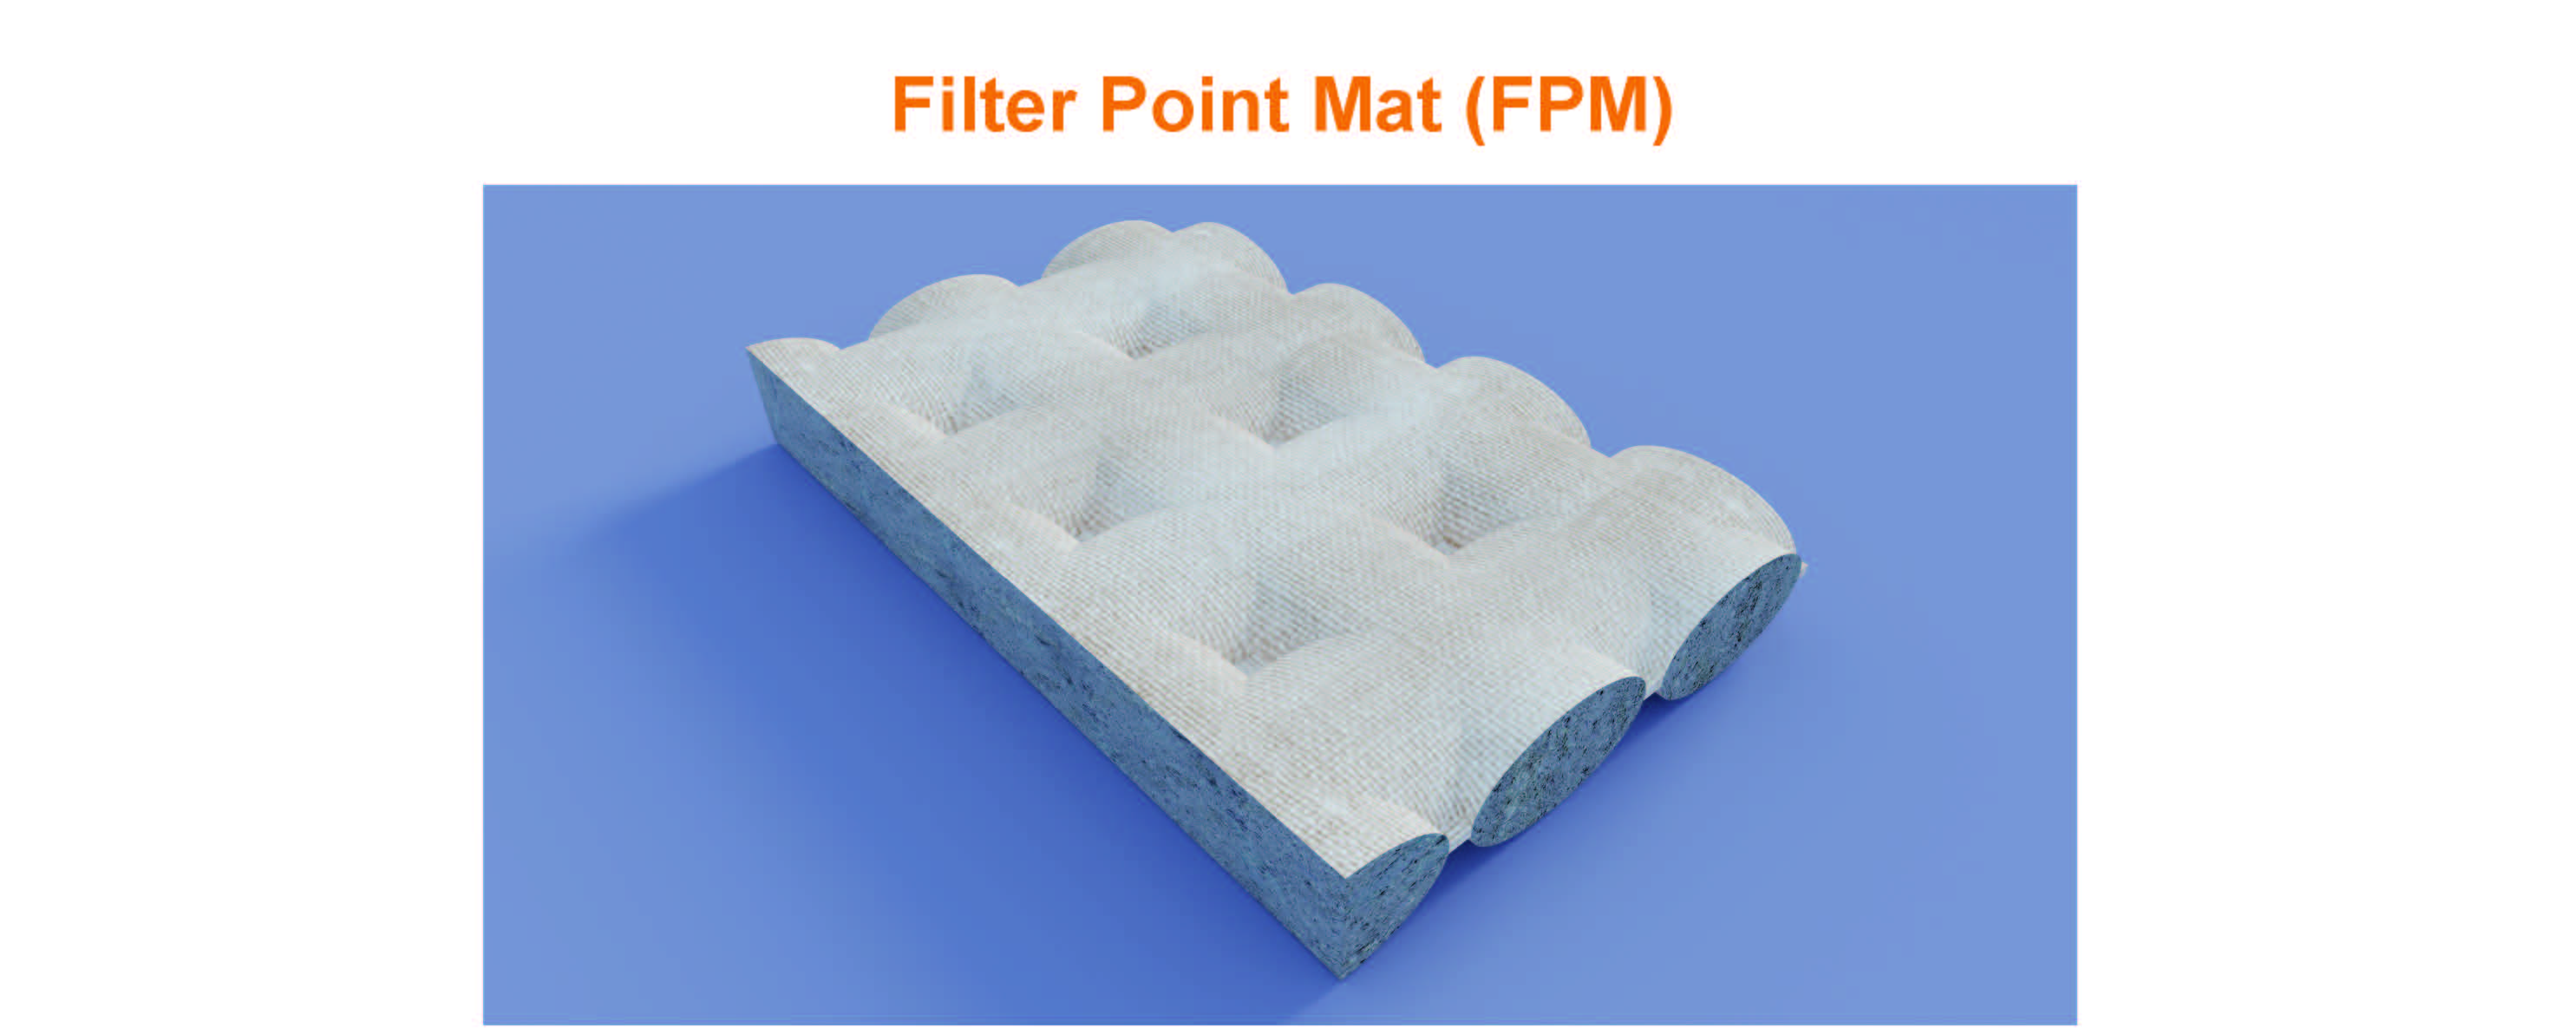 Filter Point Mat